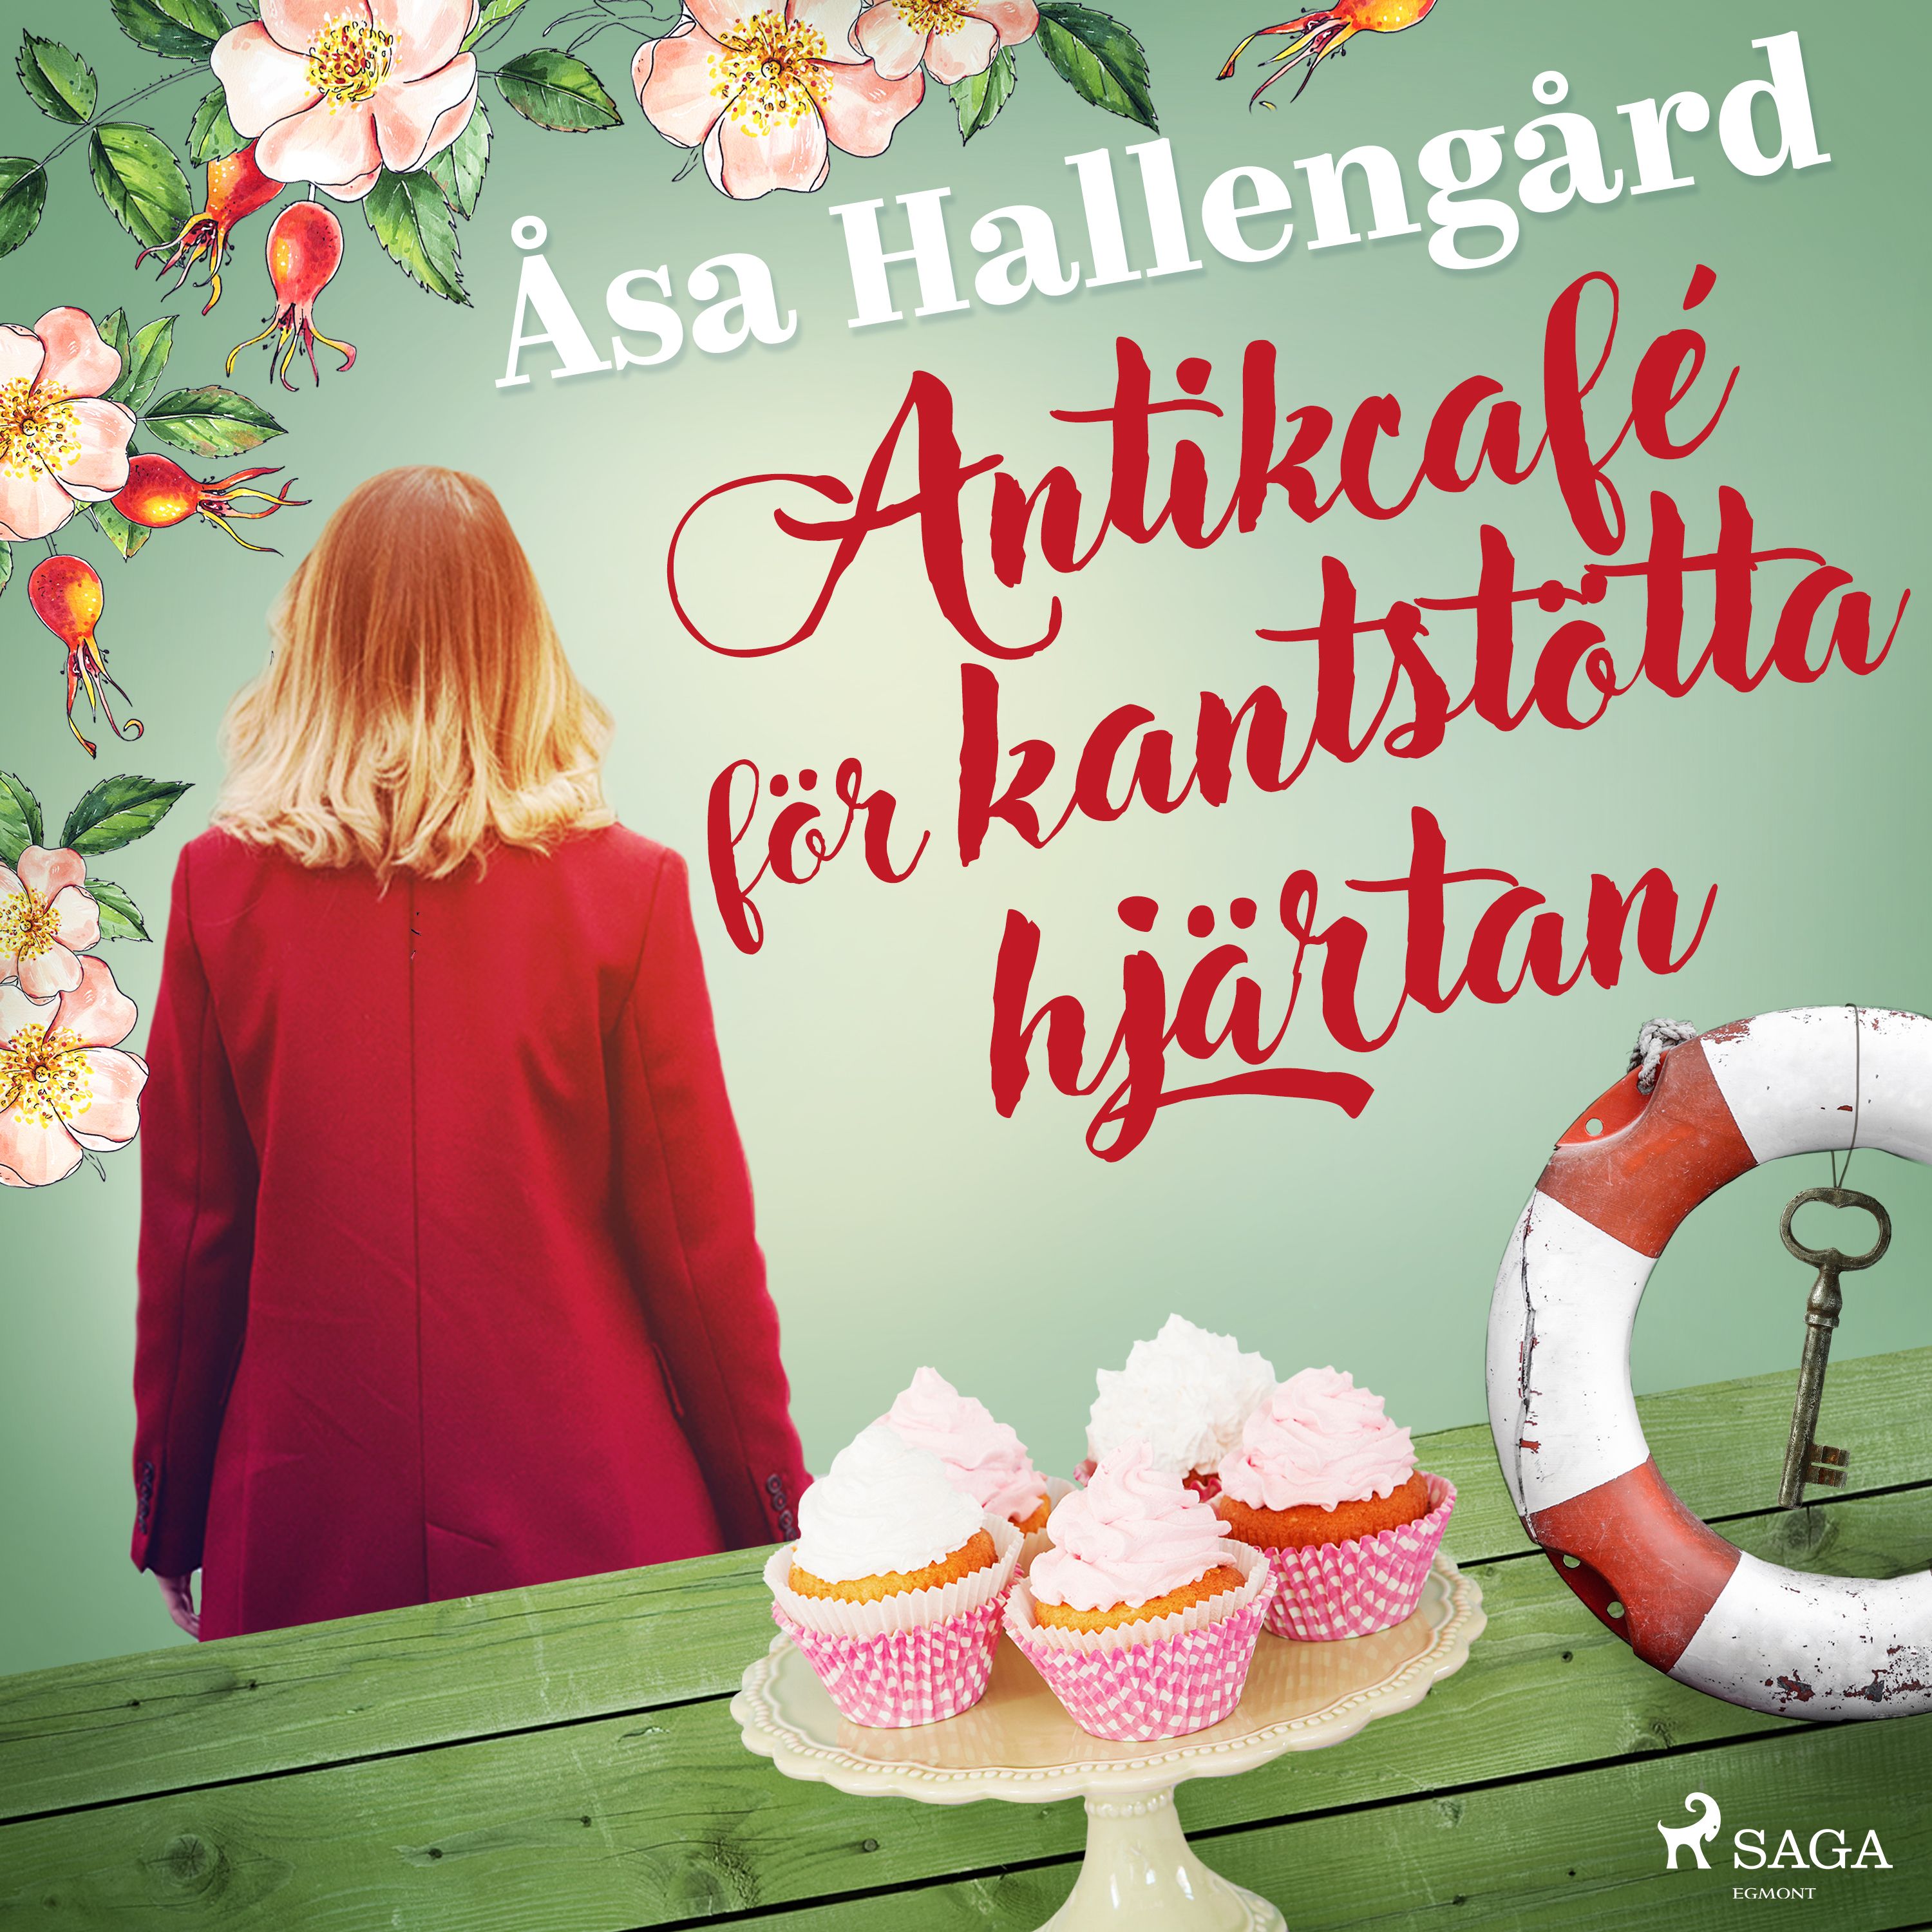 Antikcafé för kantstötta hjärtan, ljudbok av Åsa Hallengård